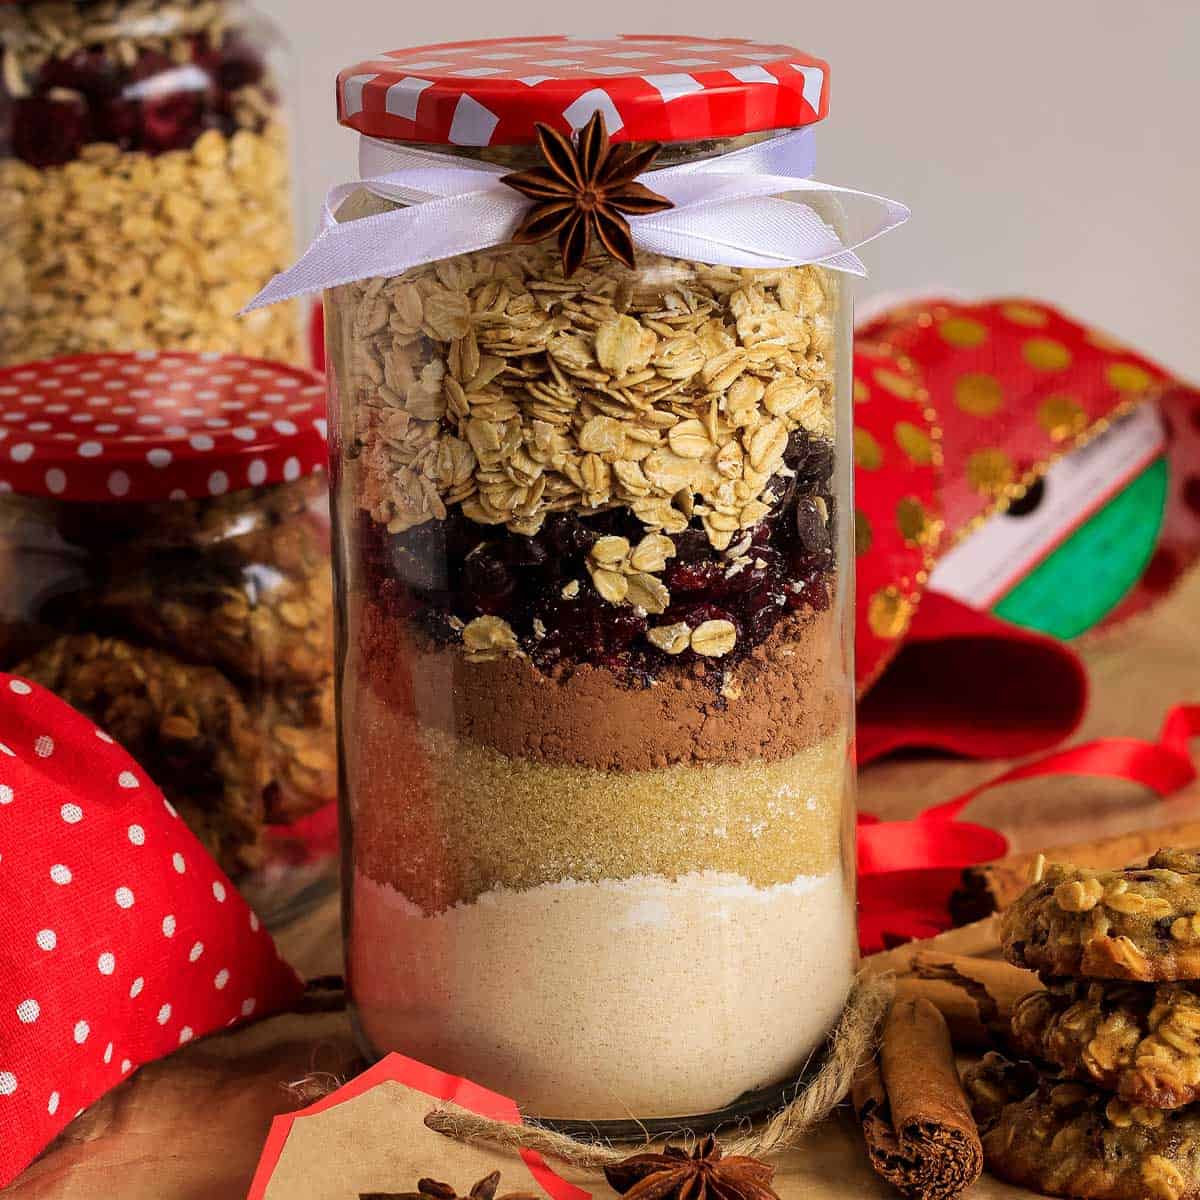 https://cookeatlivelove.com/wp-content/uploads/2020/11/cookie-gift-jars-recipe.jpg